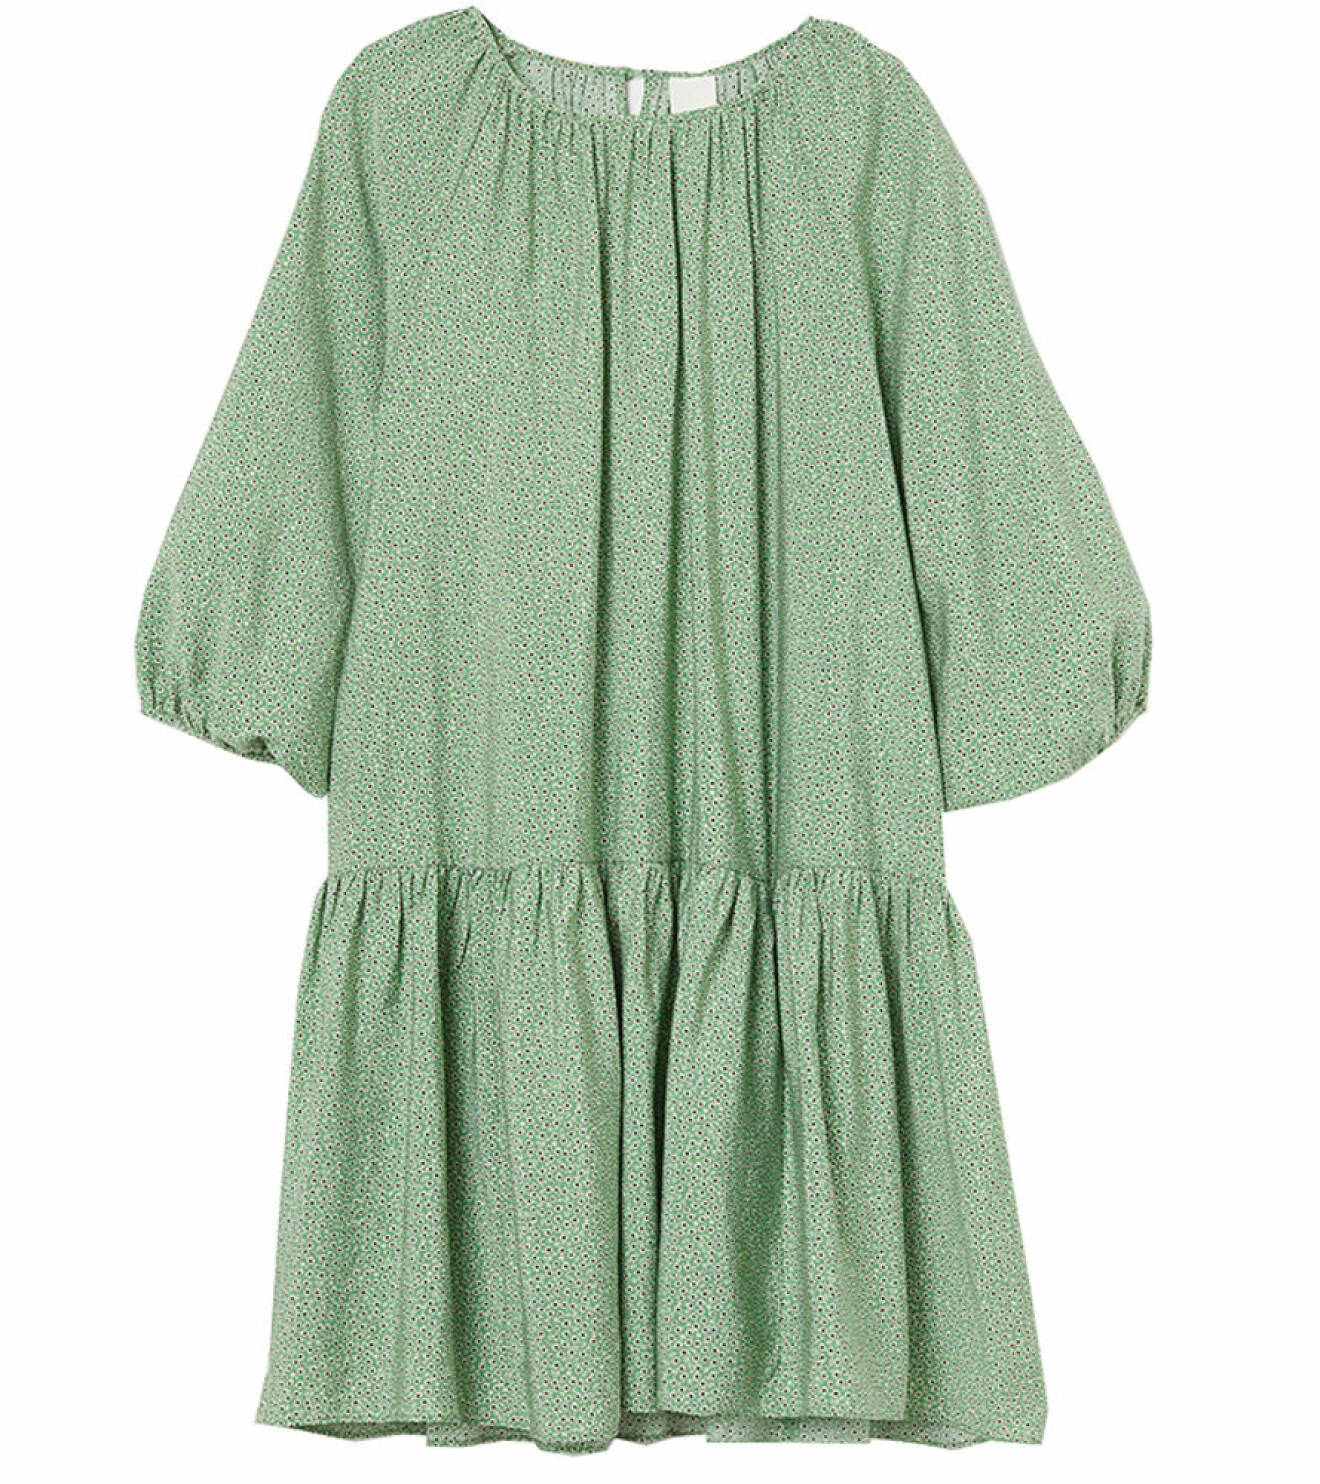 grön mönstrad a-linjeformad klänning